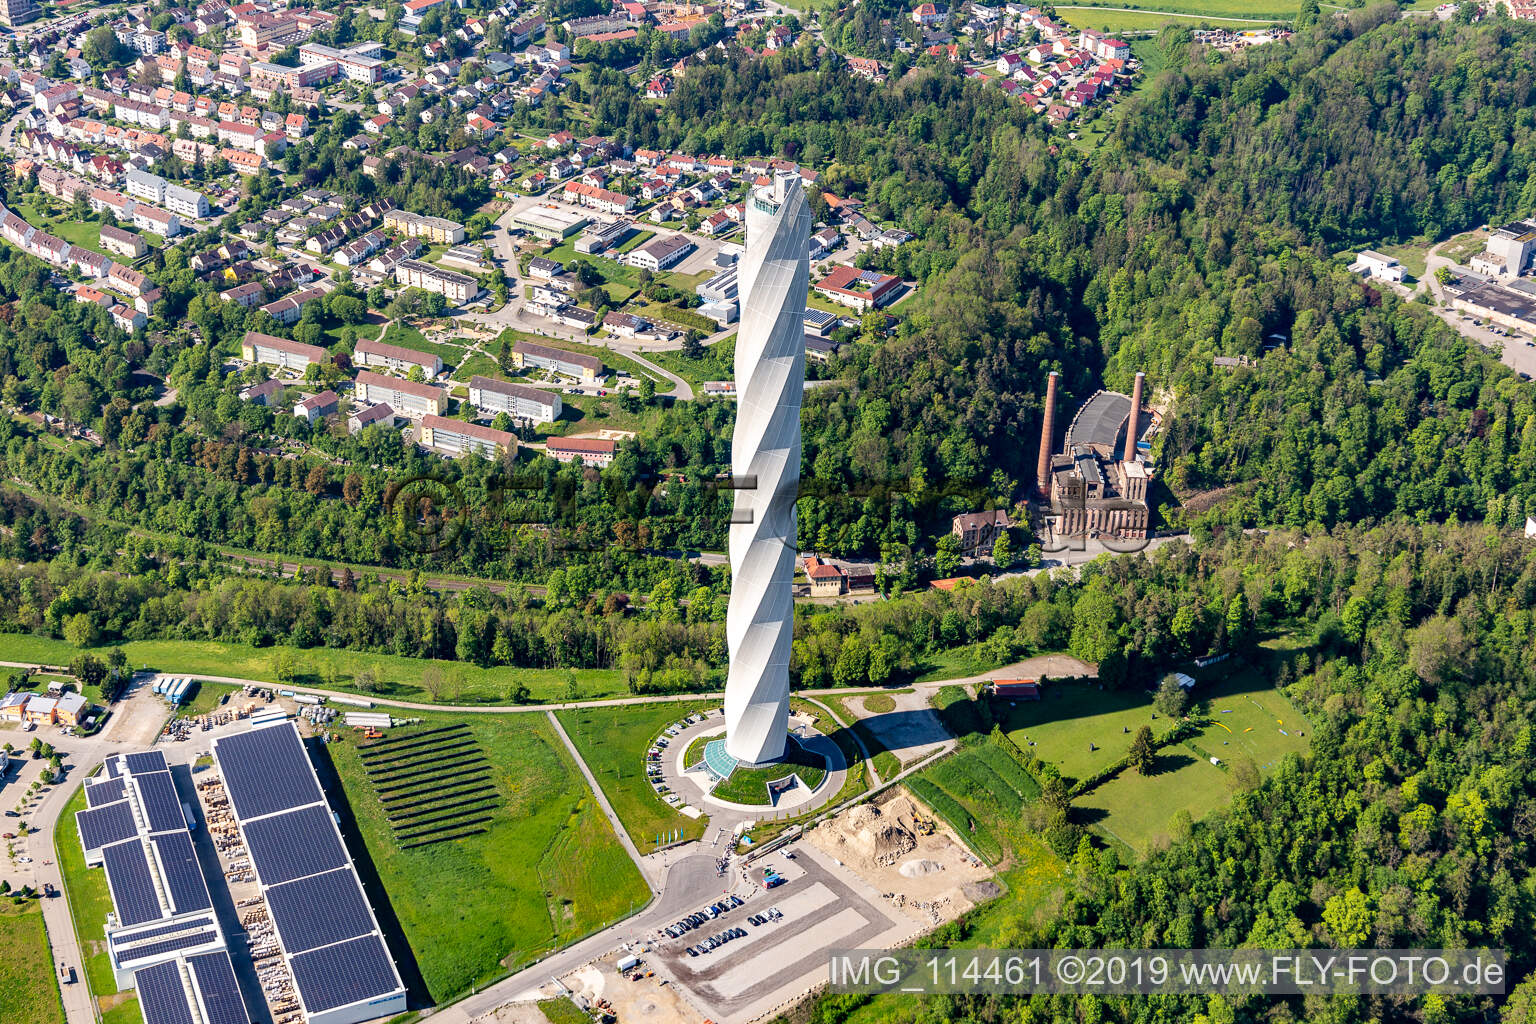 Schrägluftbild von Turm thyssenkrupp Testturm für Expressaufzüge am Berner Feld in Rottweil. Das neue Wahrzeichen der Kleinstadt Rottweil ist derzeit höchstes Bauwerk in Baden-Württemberg, Deutschland